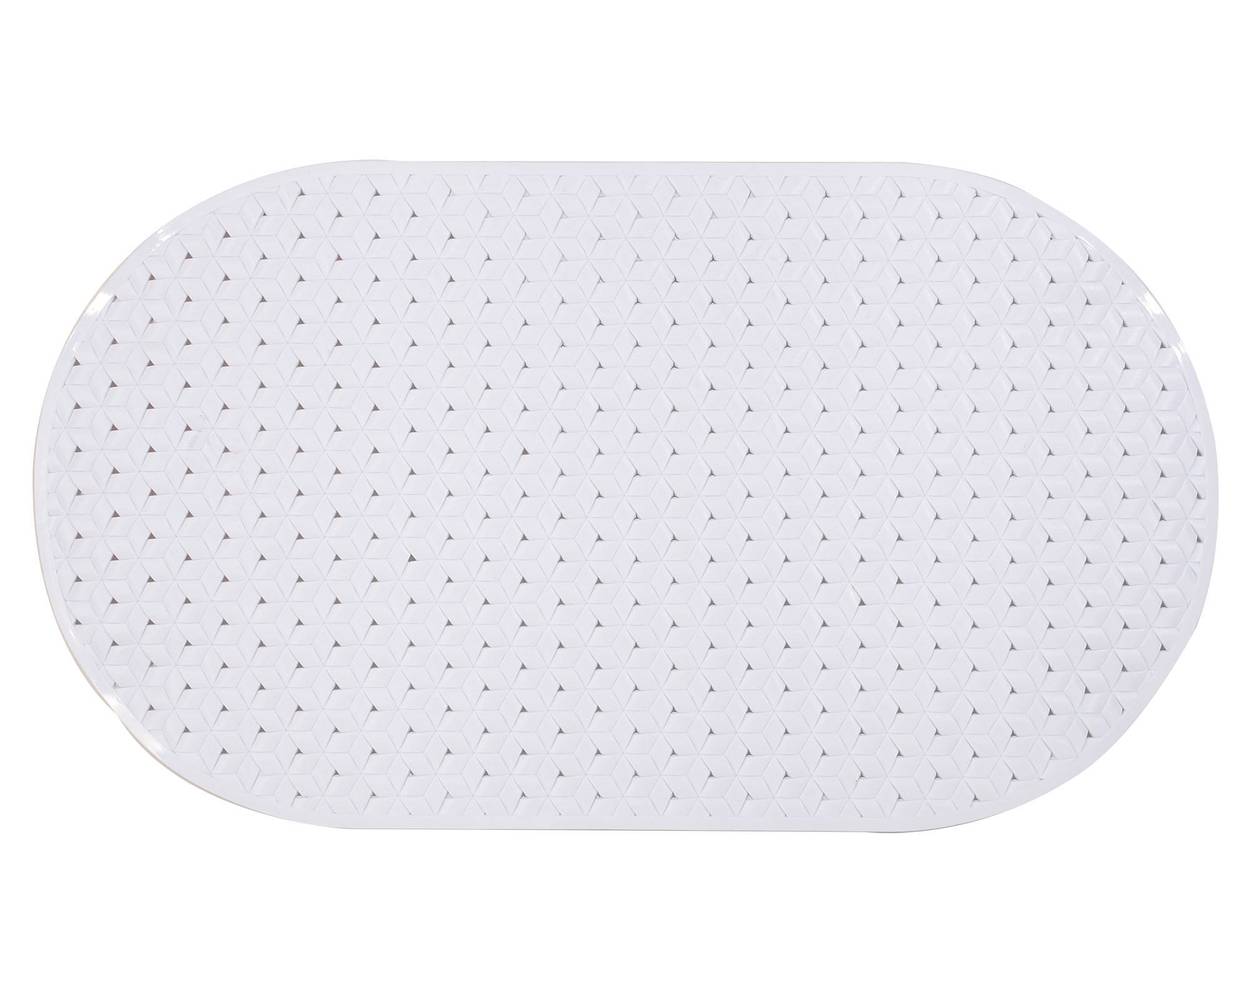 Cotidiana piso tapete antideslizante ovalado romb blanco (39 x 69 cm)